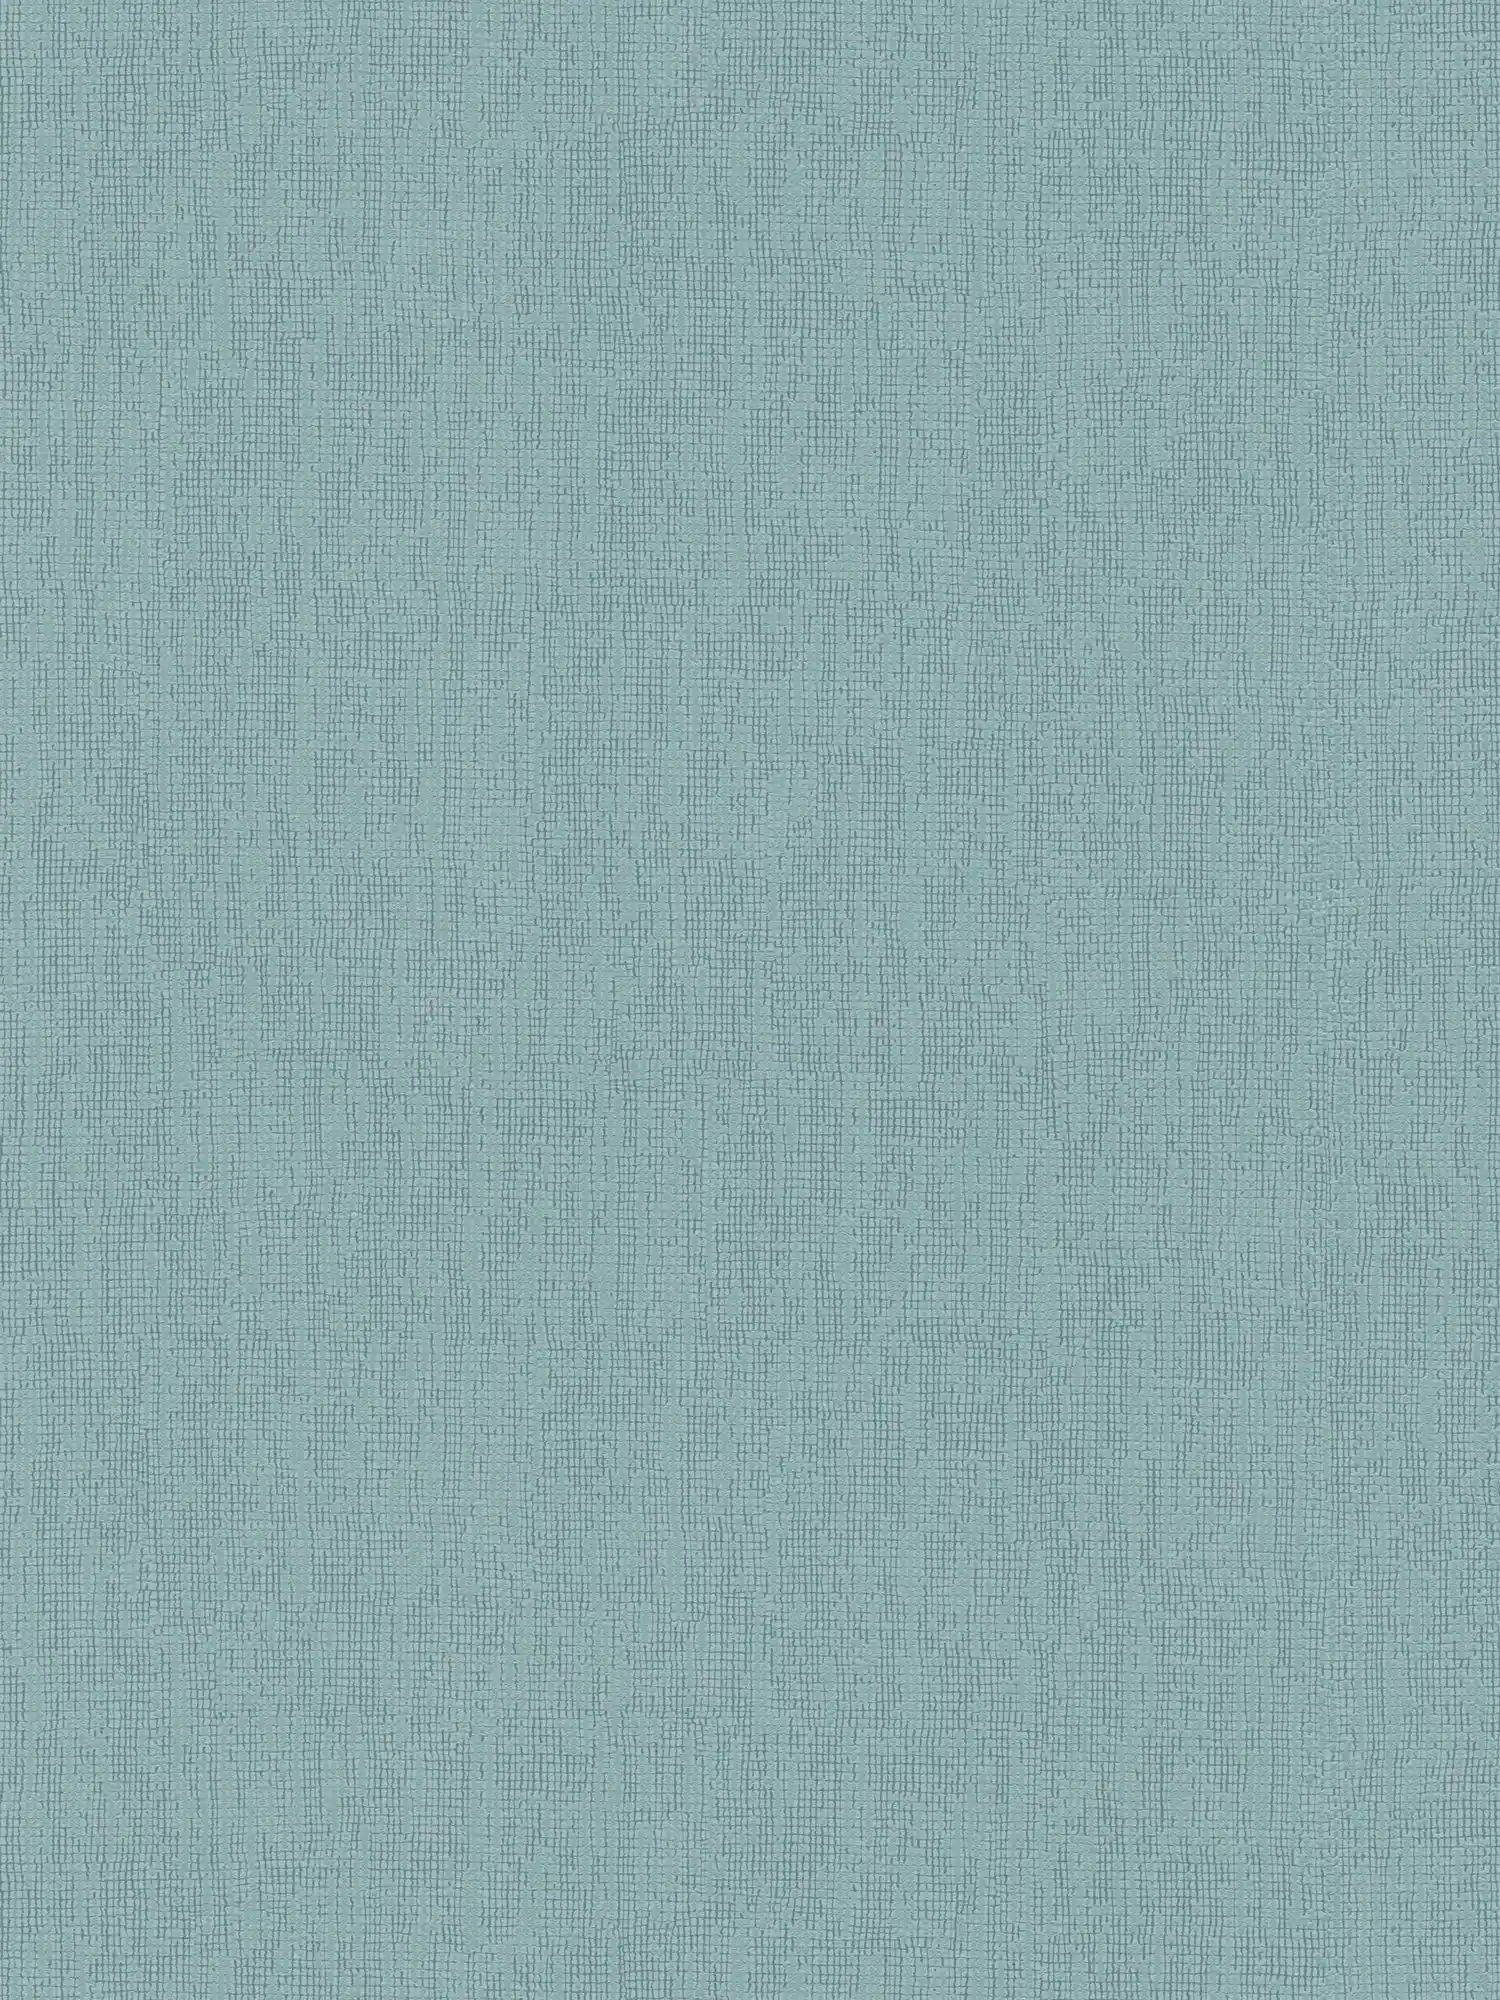 Hellblaue Tapete einfarbig mit Strukturdetails, Scandi Stile
